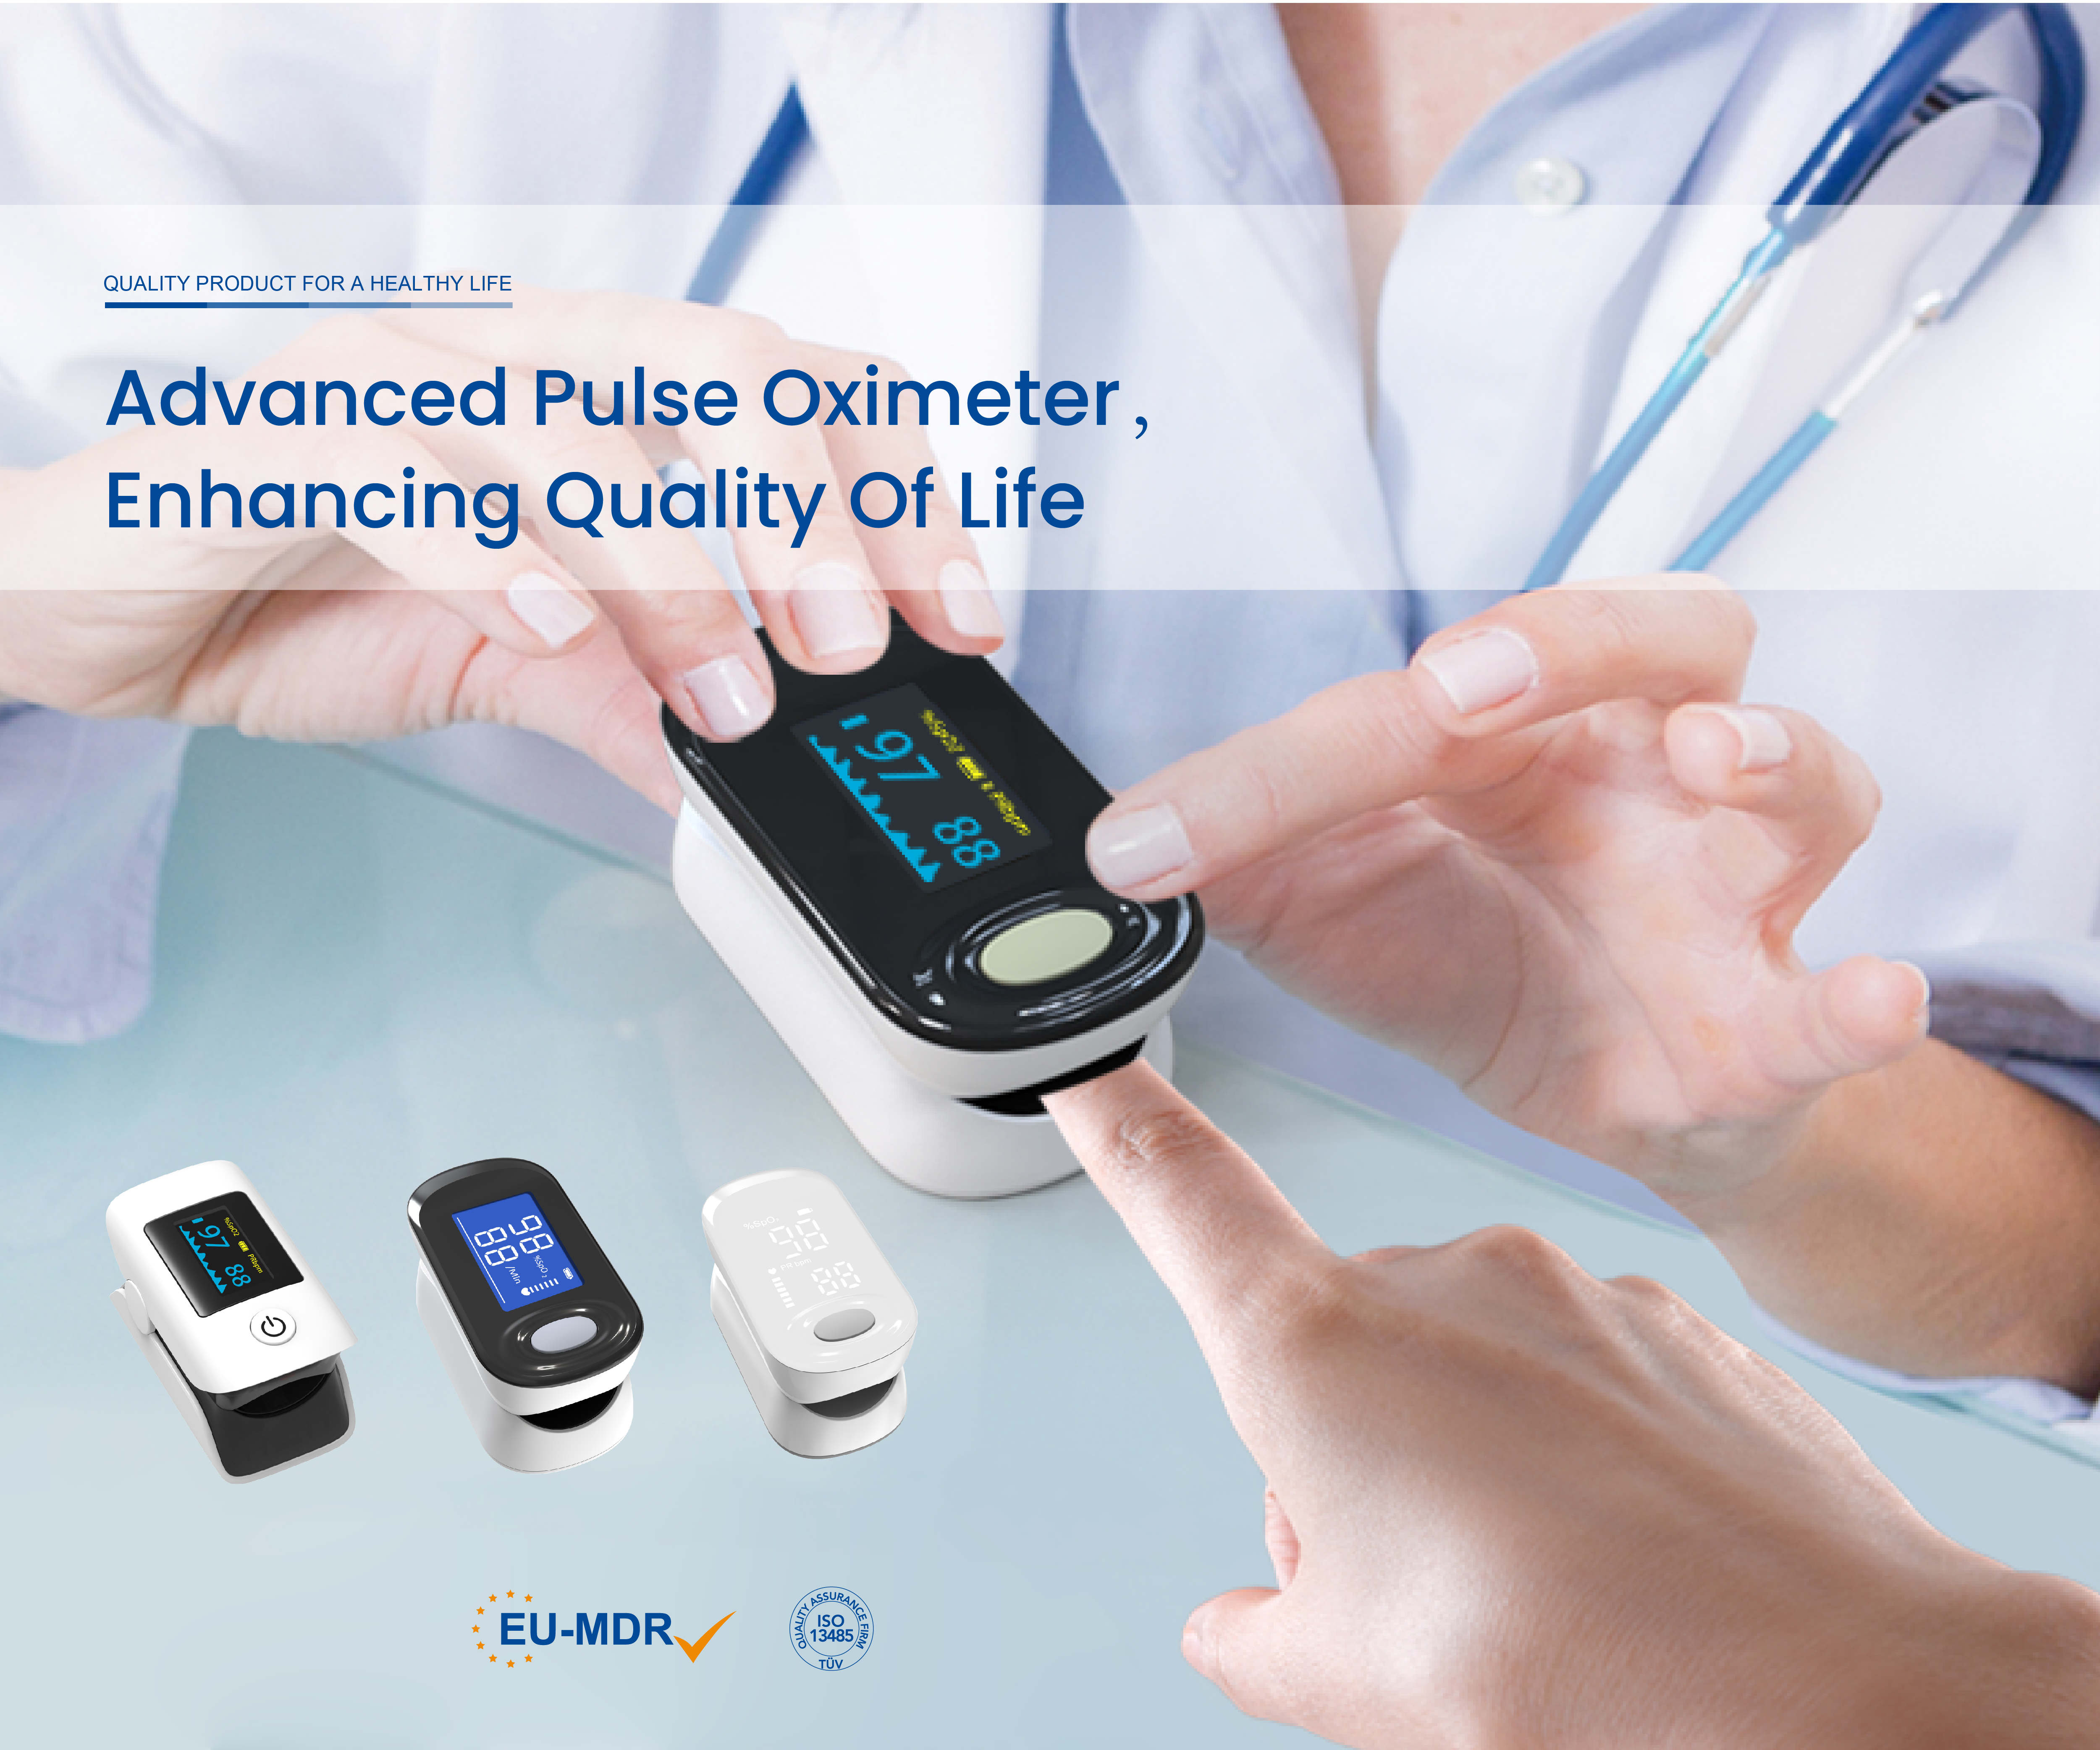 Felicitări Joytech Healthcare pentru obținerea certificării CE MDR pentru pulsoximetrele cu vârful degetelor!